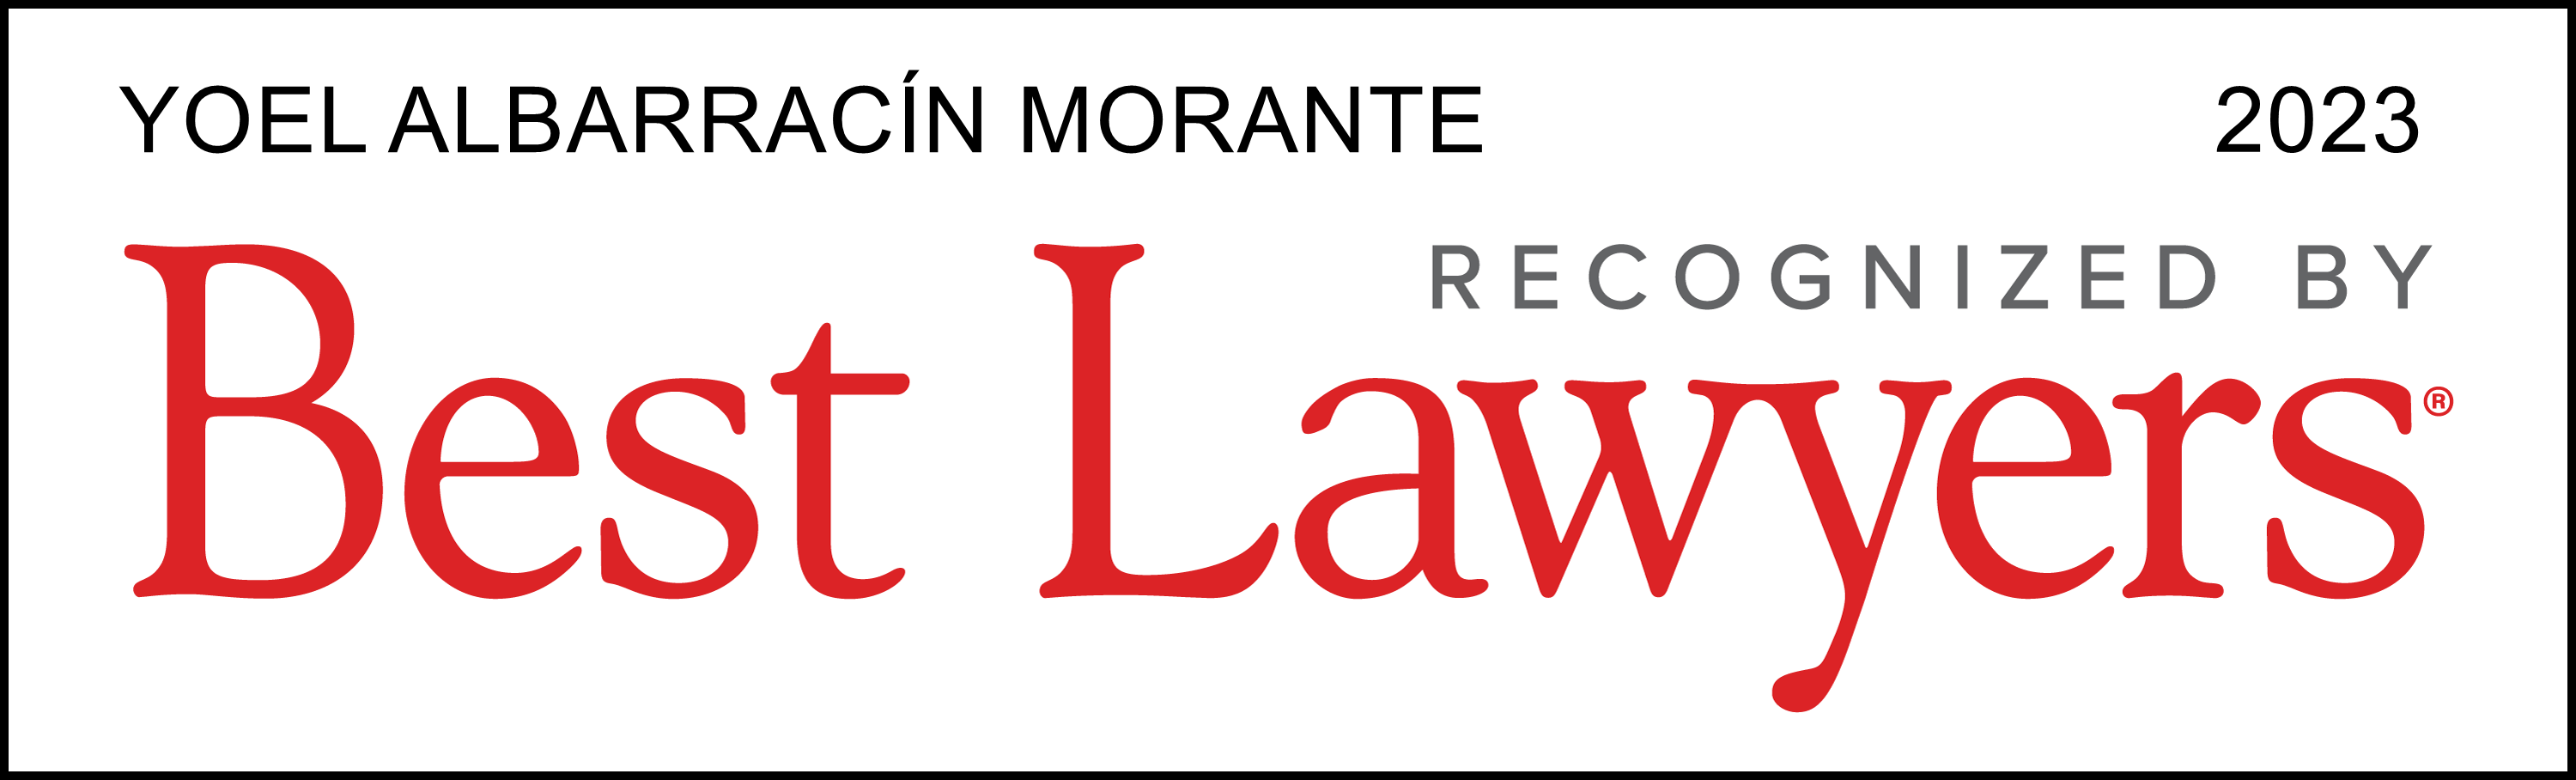 Best Lawyers 2023 Yoel Albarracín Morante